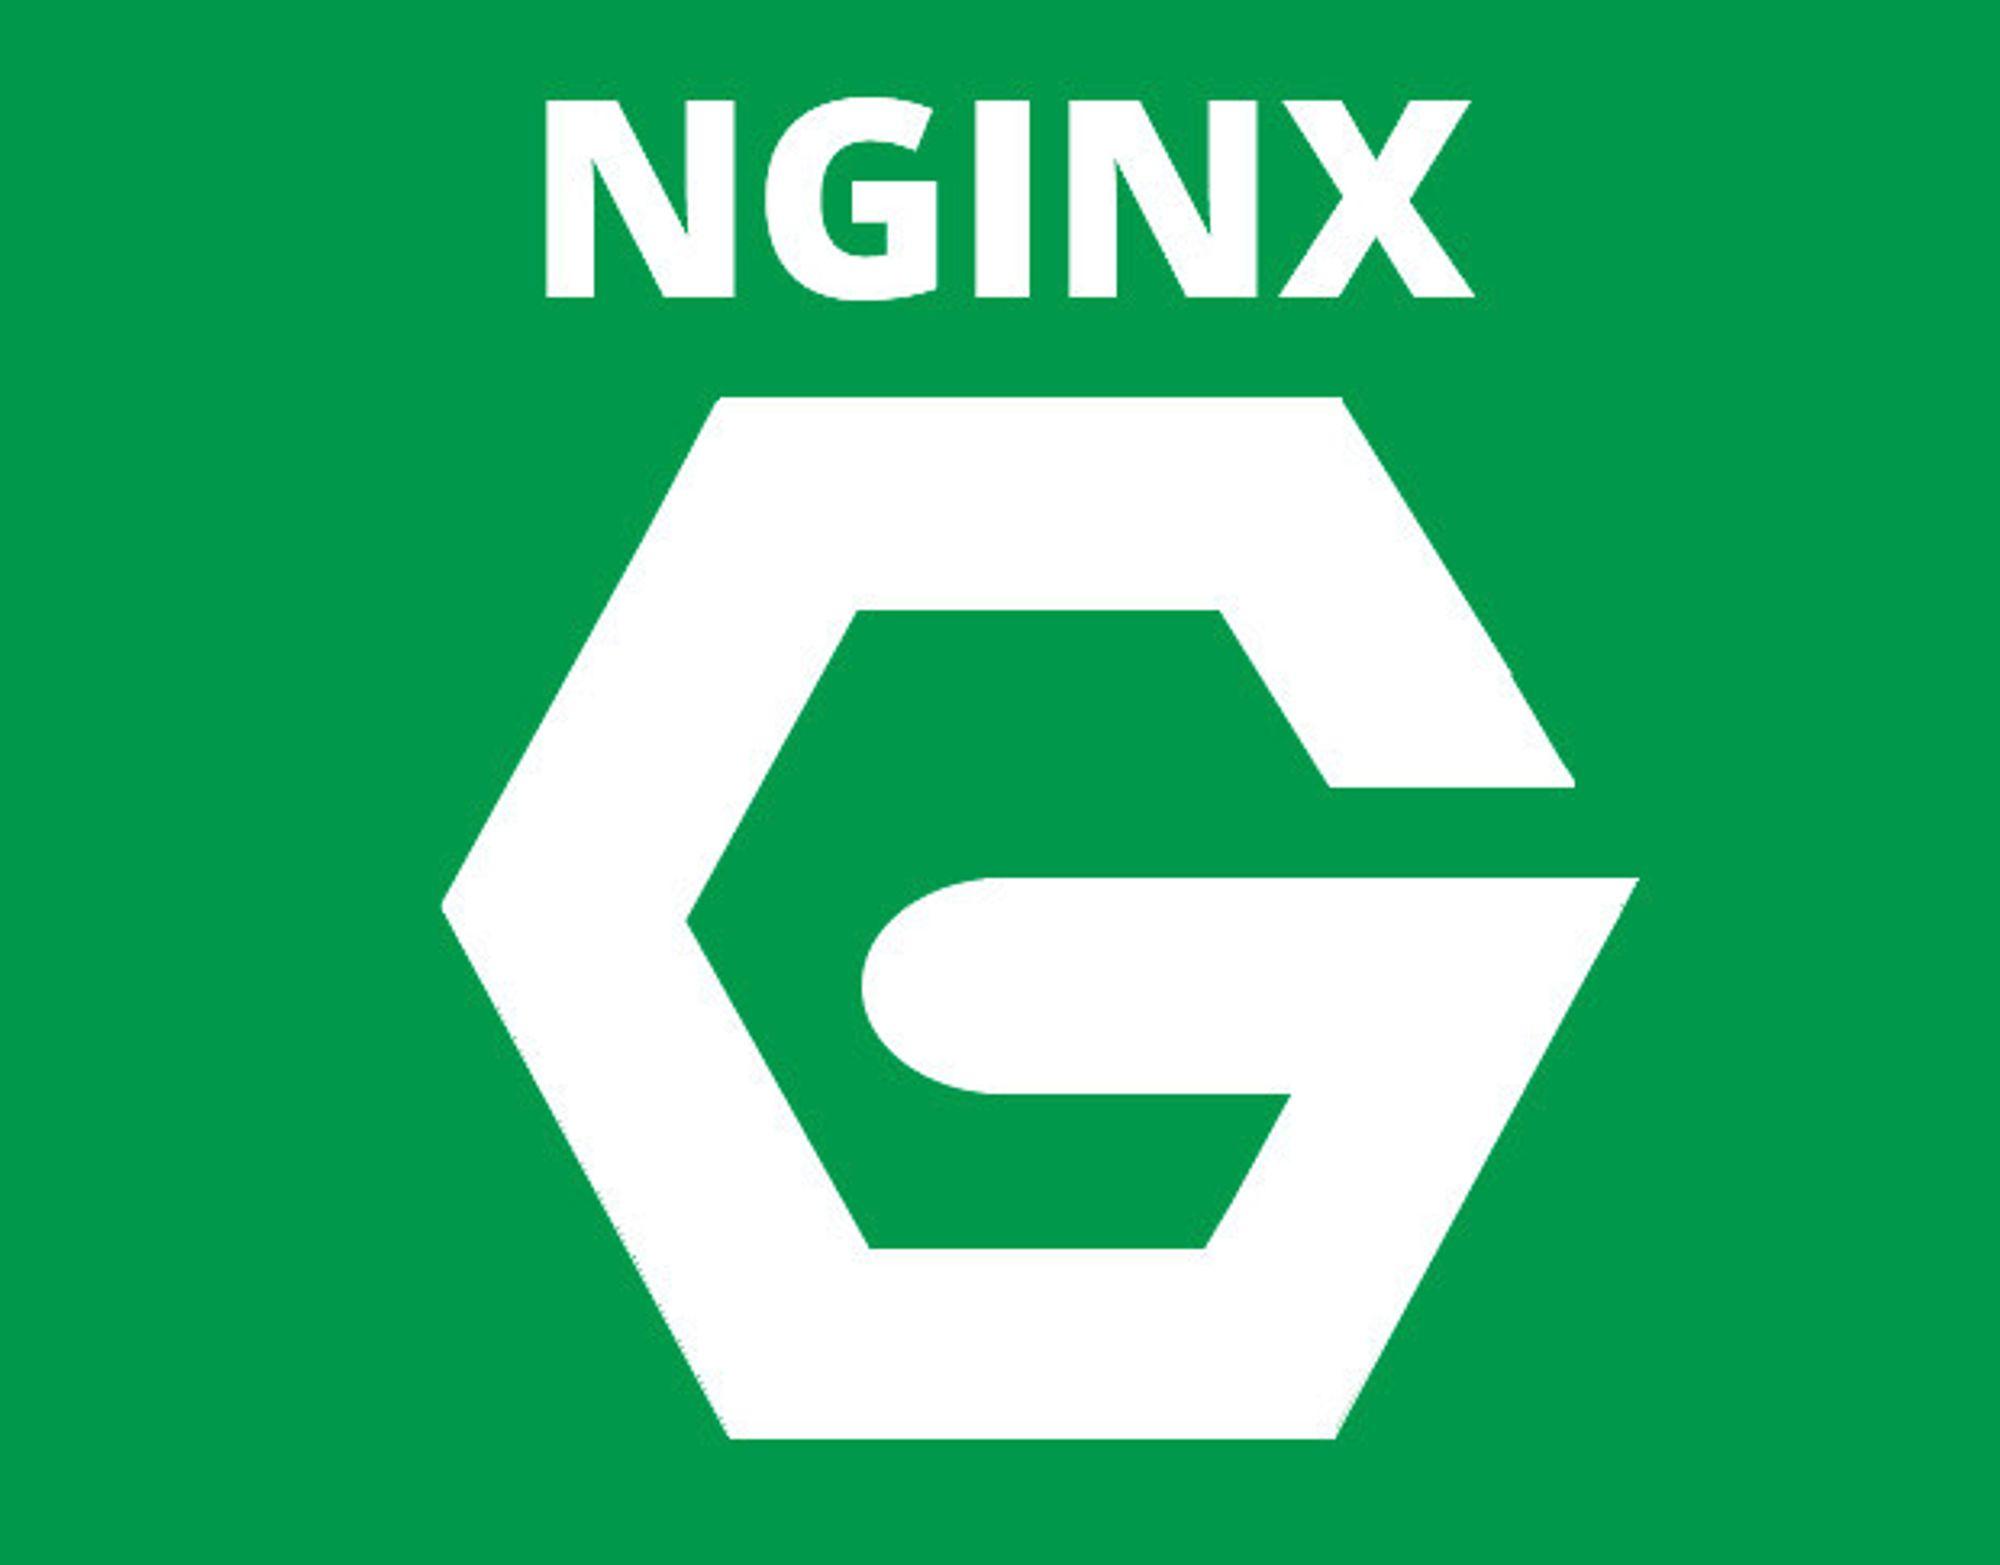 Nginx란 무엇인가?